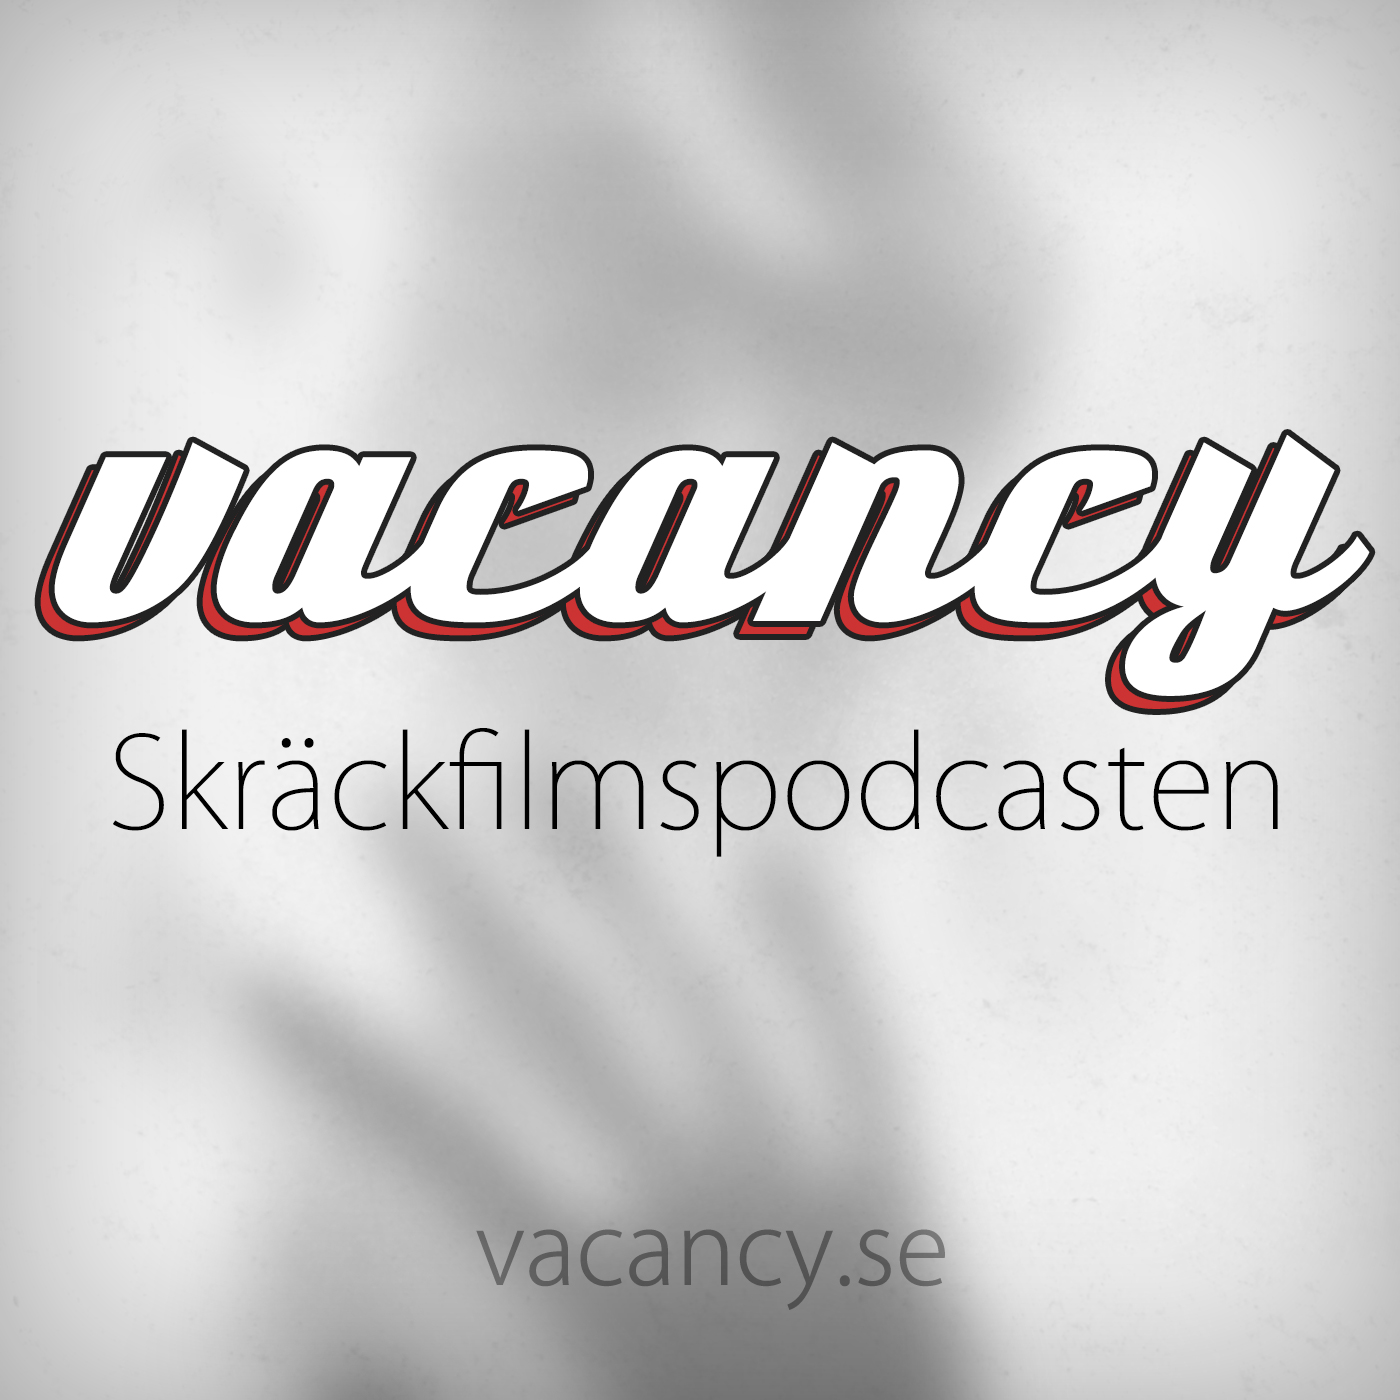 vacancy - Skräckfilmspodcasten